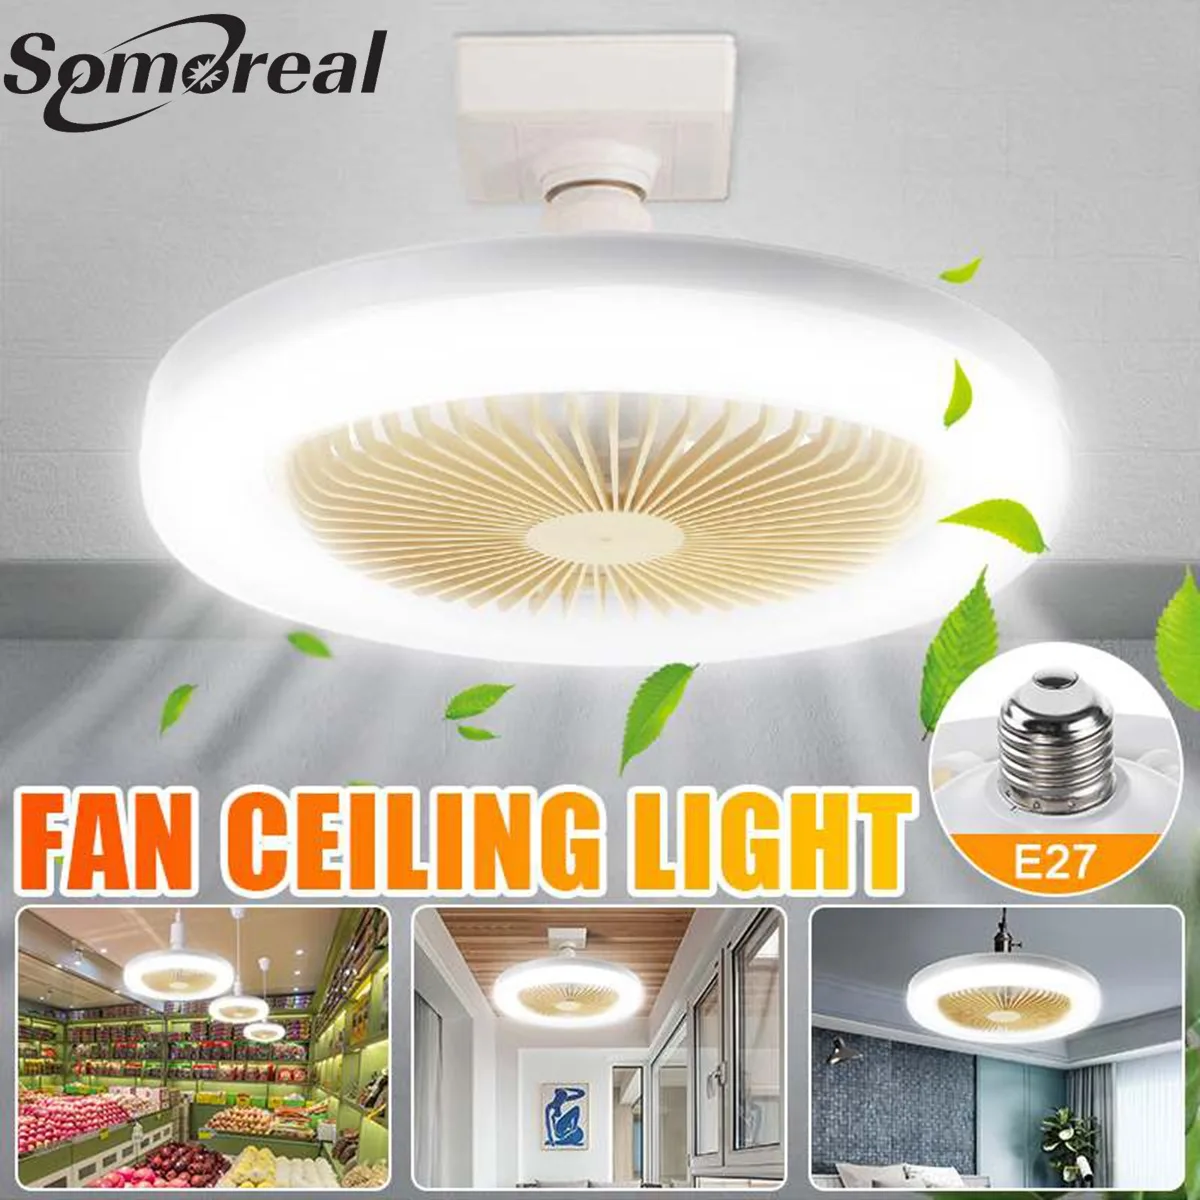 

NEW LED Ceiling Fan Modern Lamp White Light 26cm for Bedroom Decoration Lighting Ceiling Fan with Lights Good Sleep AC85-265V